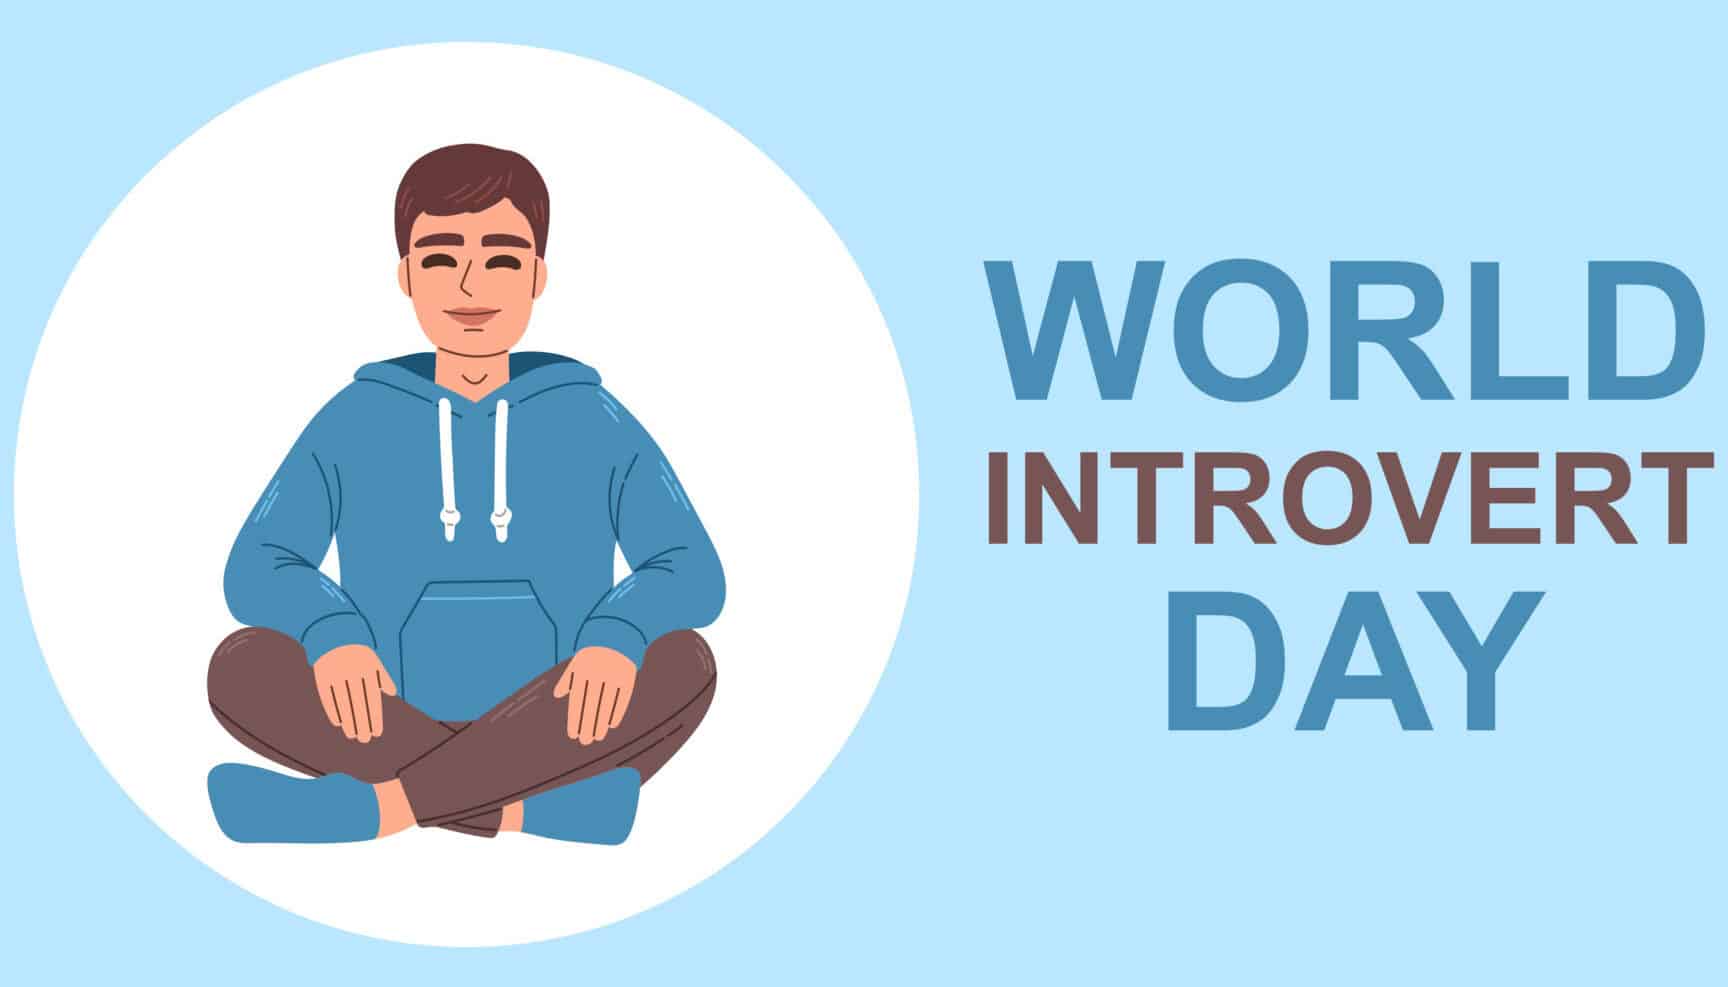 dia mundial del introvertido 2 de enero